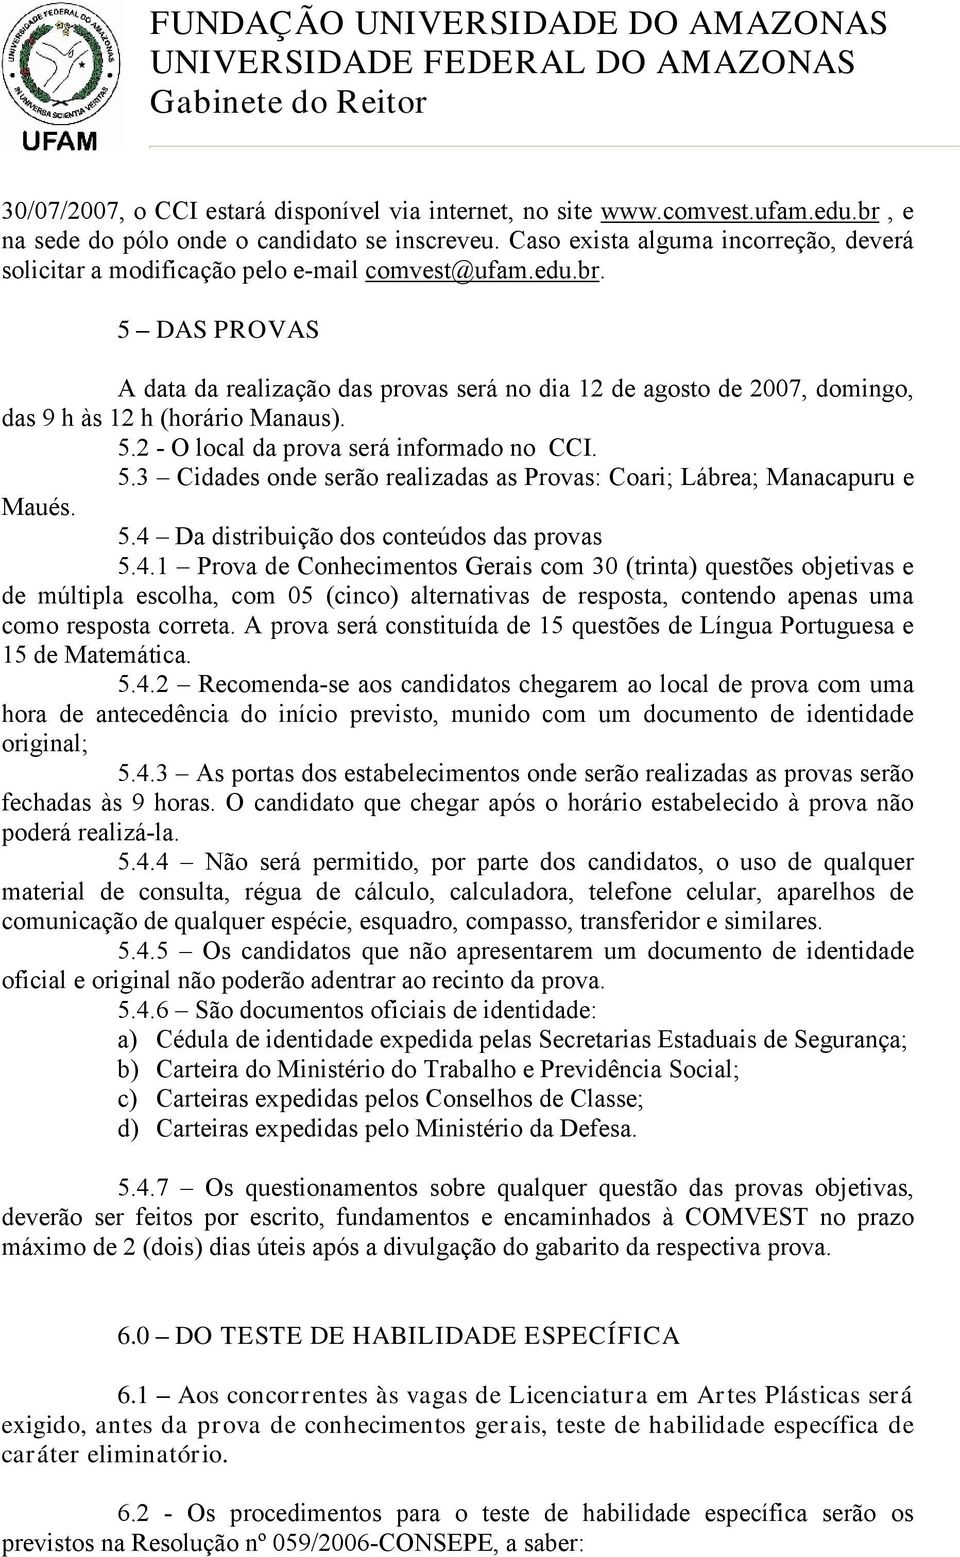 5 DAS PROVAS A data da realização das provas será no dia 12 de agosto de 2007, domingo, das 9 h às 12 h (horário Manaus). 5.